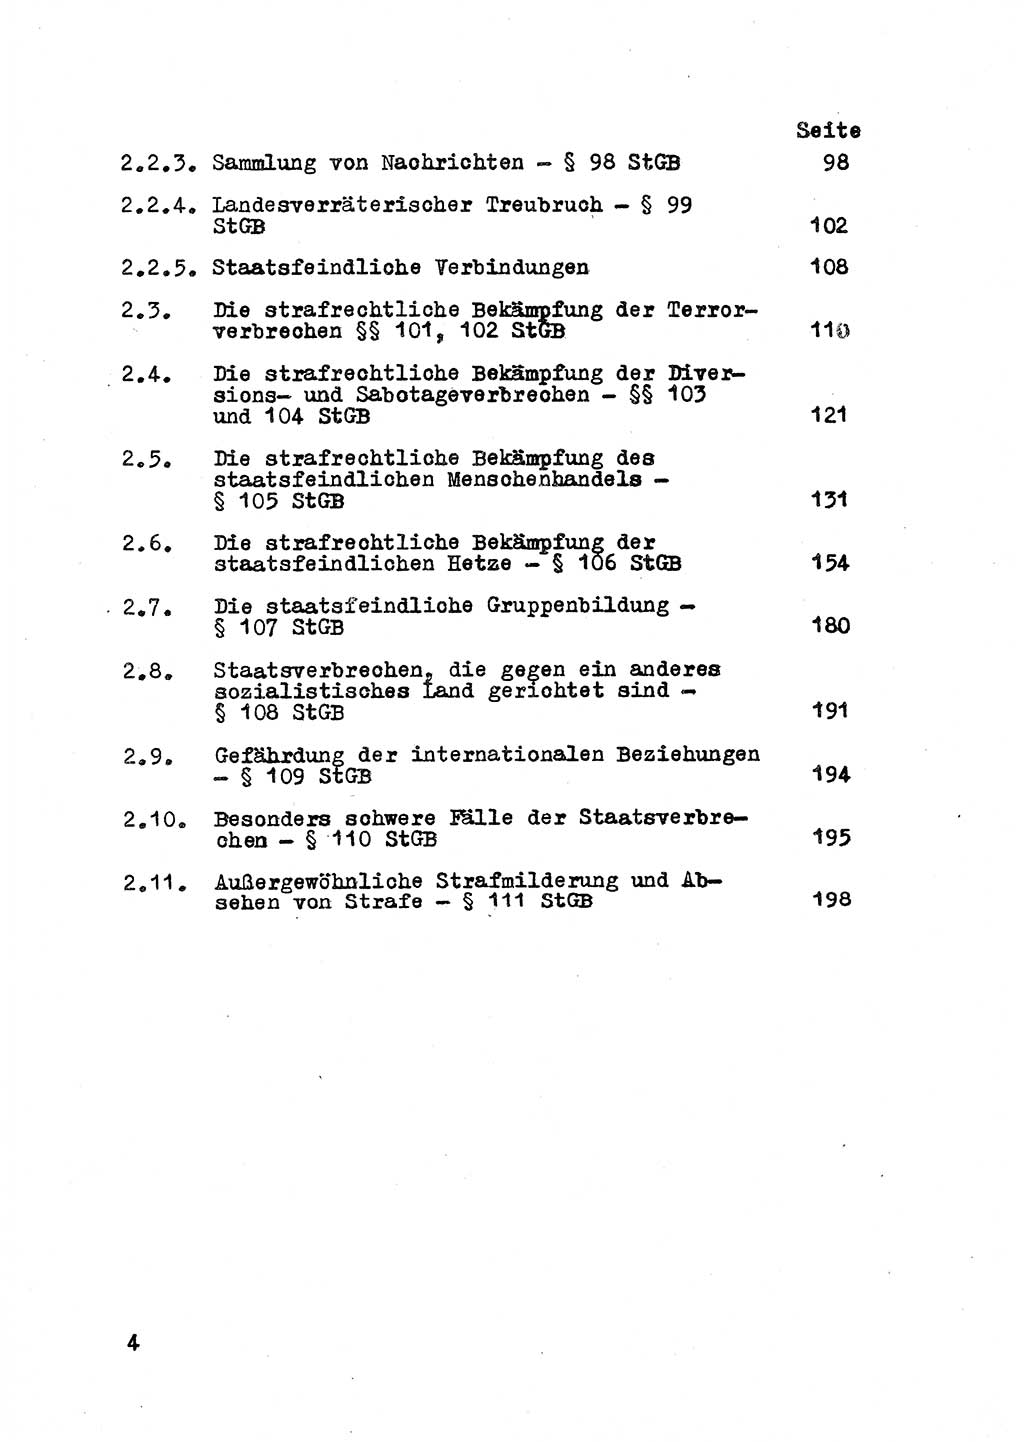 Strafrecht der DDR (Deutsche Demokratische Republik), Besonderer Teil, Lehrmaterial, Heft 2 1969, Seite 4 (Strafr. DDR BT Lehrmat. H. 2 1969, S. 4)